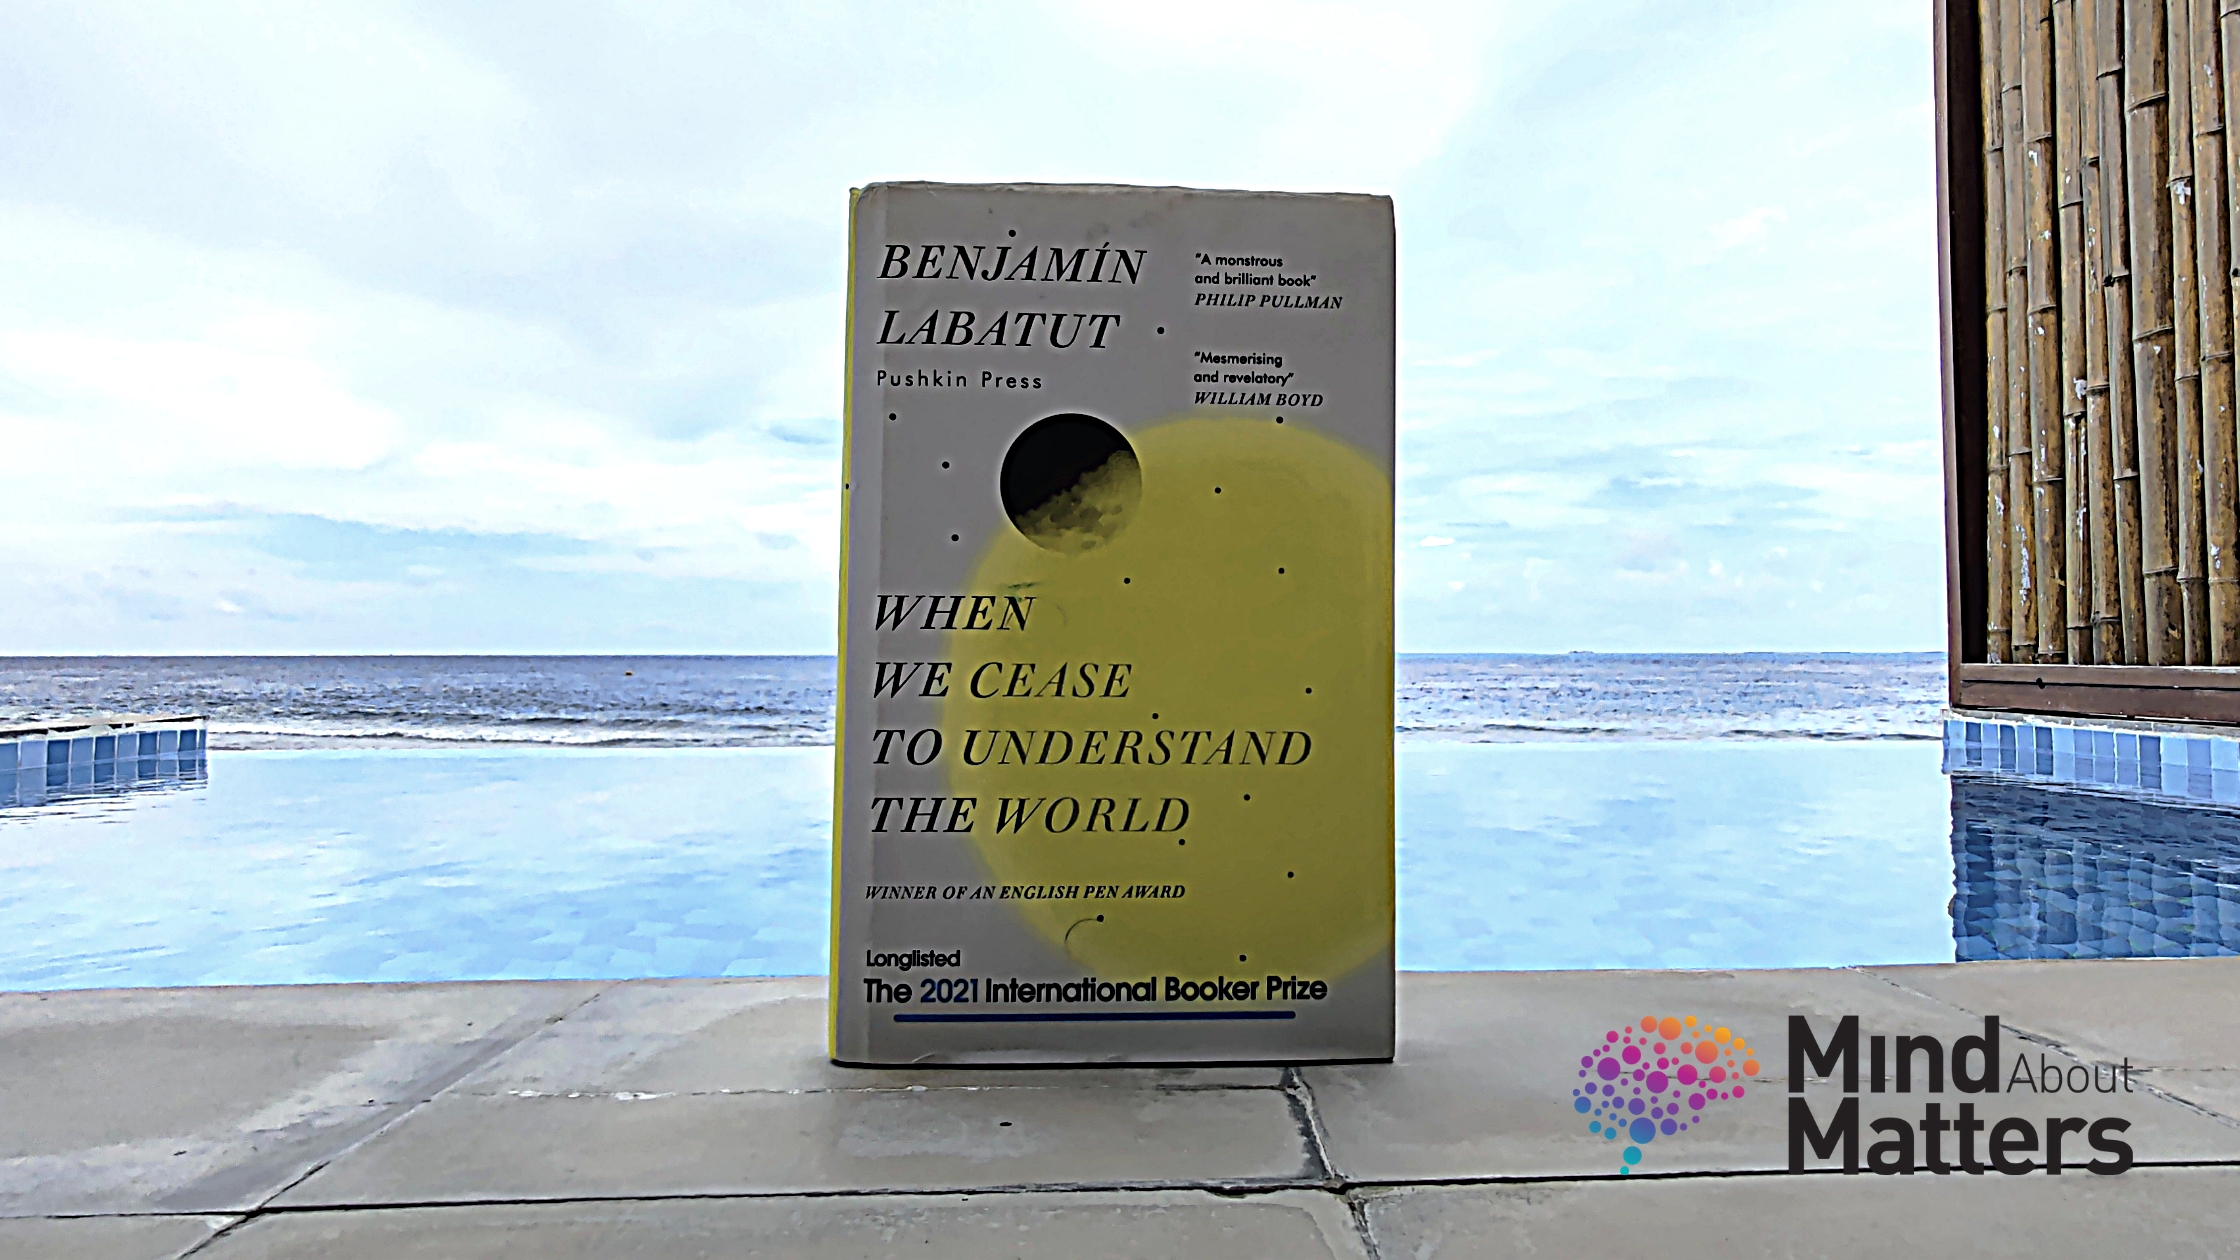 When we cease to understand the world - Benjamin Labatut